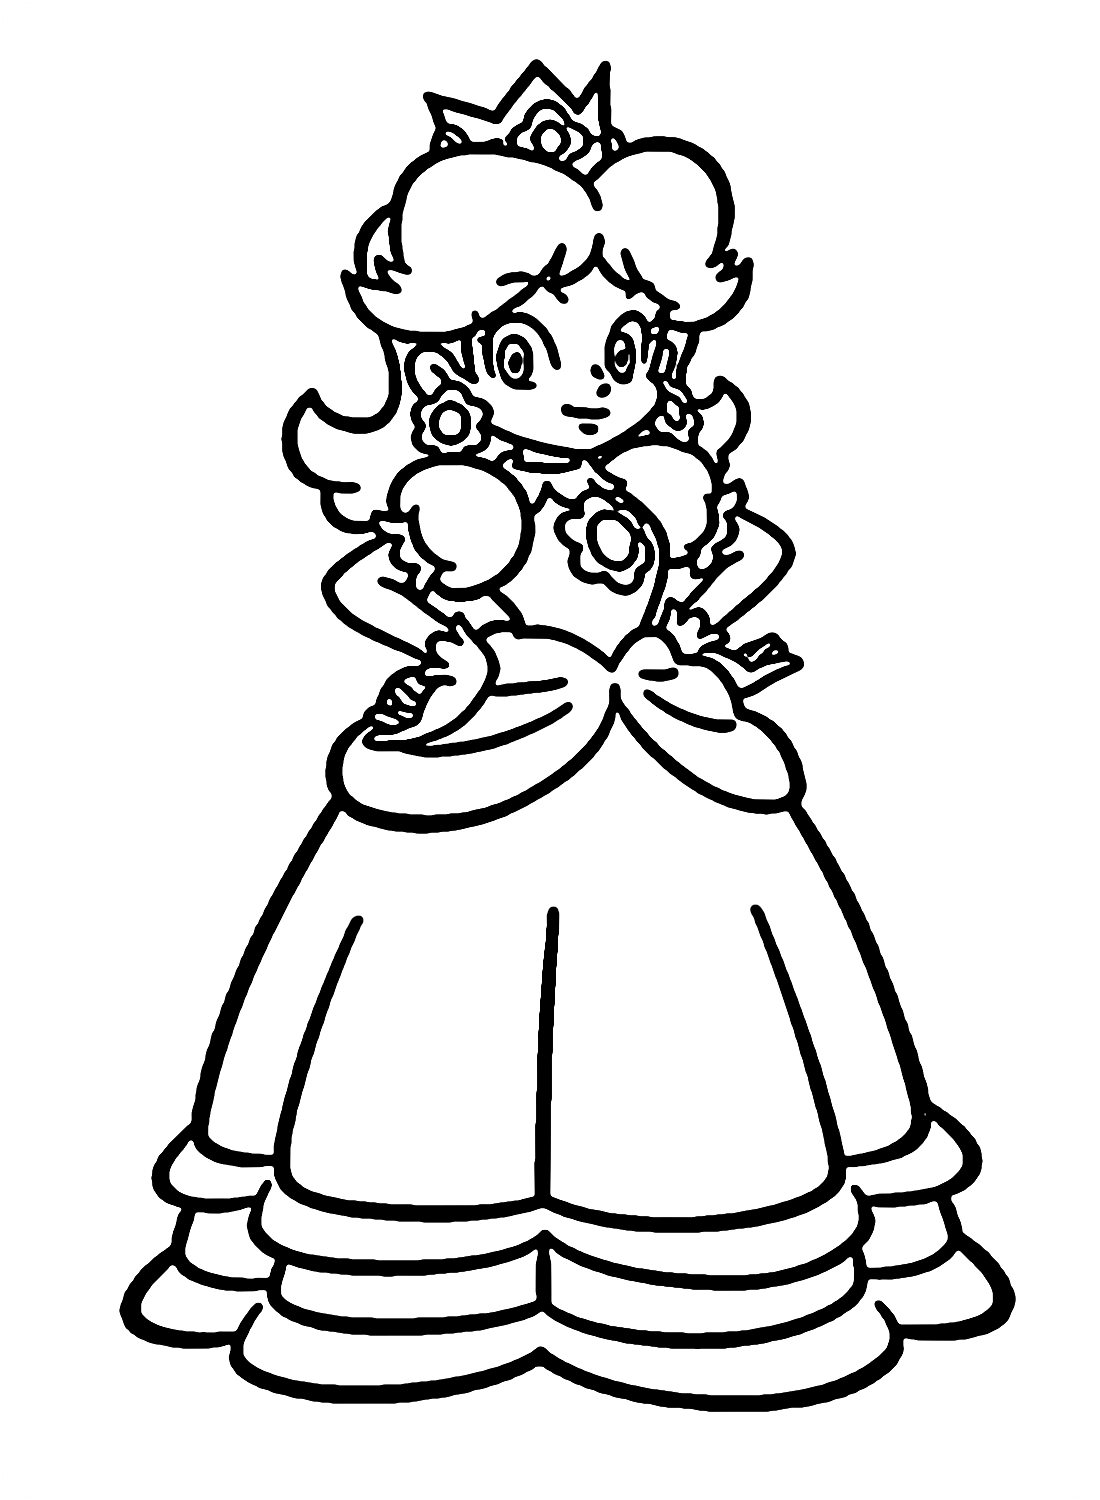 Princesa Daisy de Super Mario de Princesa Daisy